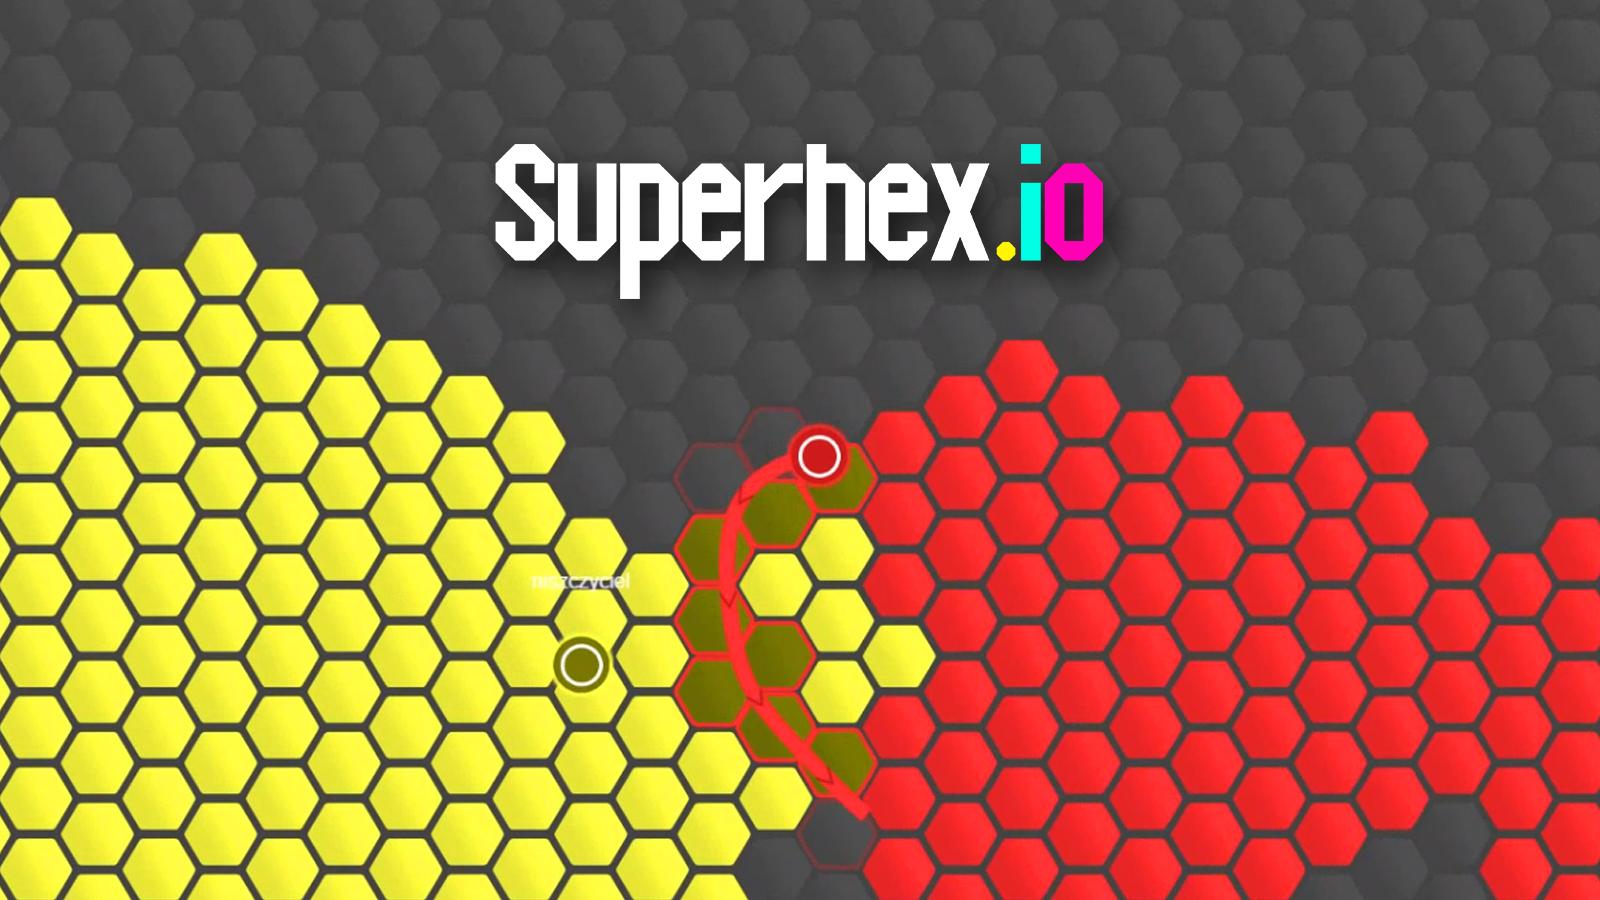 Superhex-Io